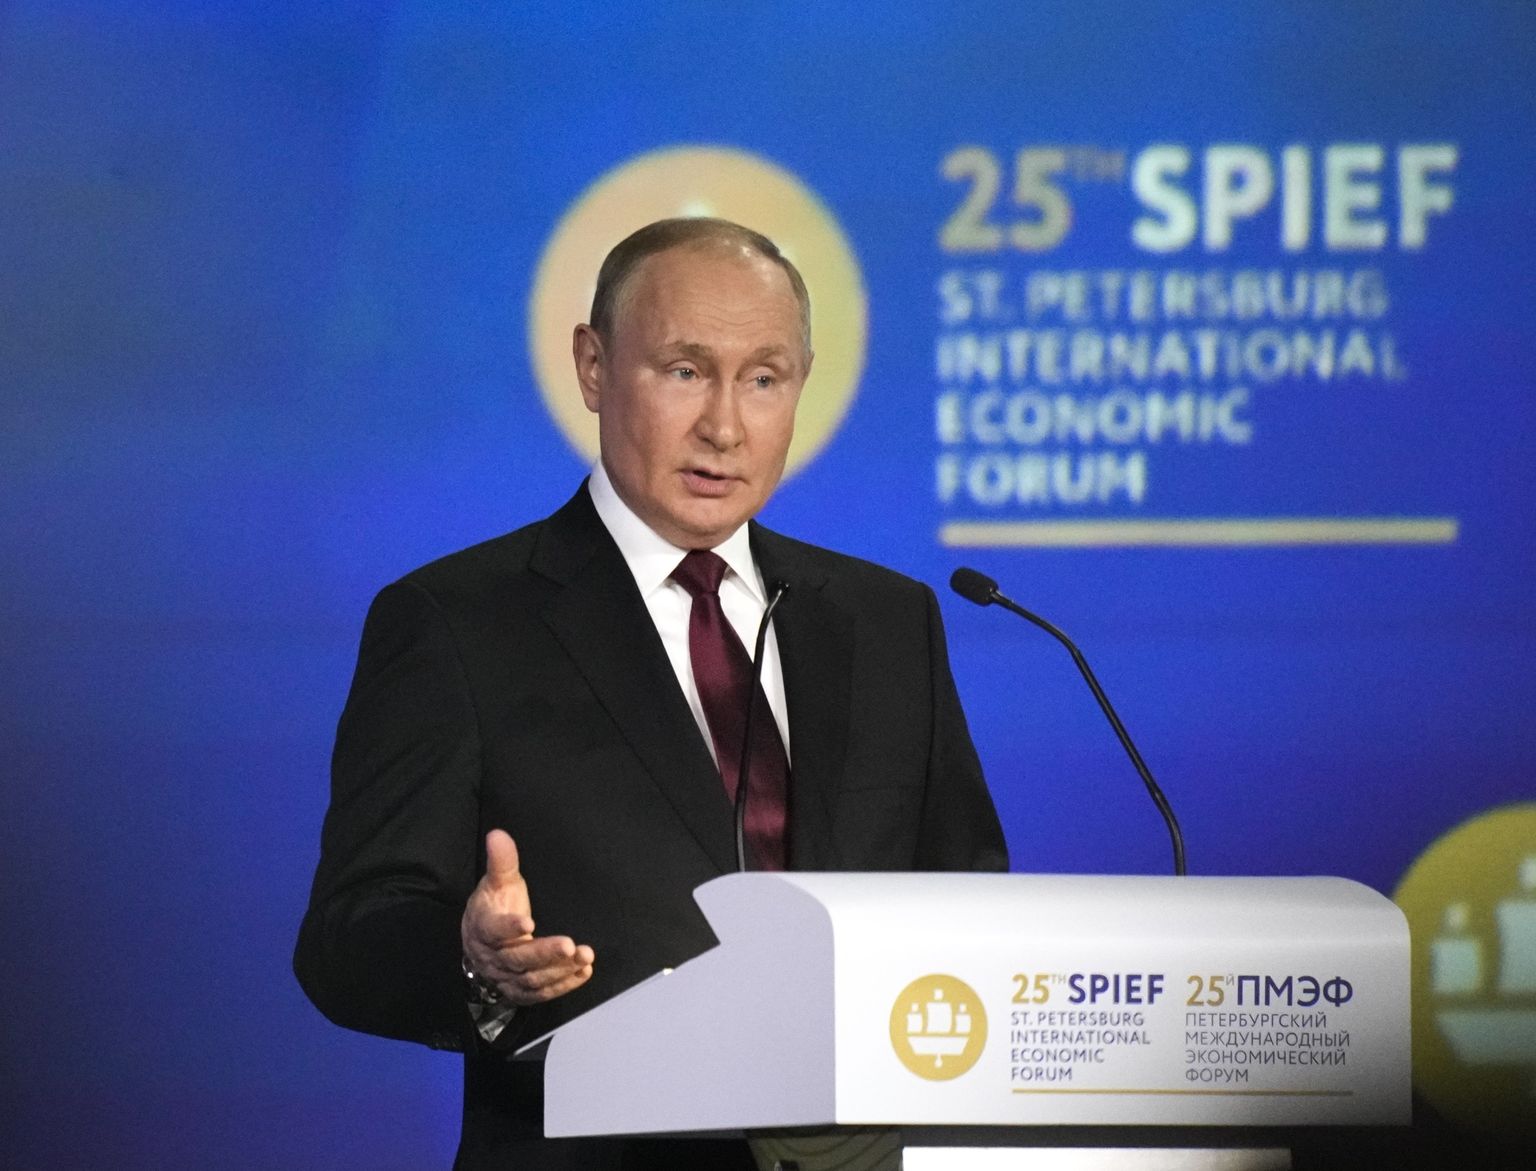 Владимир Путин с нимбом в качестве которого фотографы использовали логотип Петербургского международного экономического форума (ПМЭФ), Санкт-Петербург, 17 июня 2022 года.